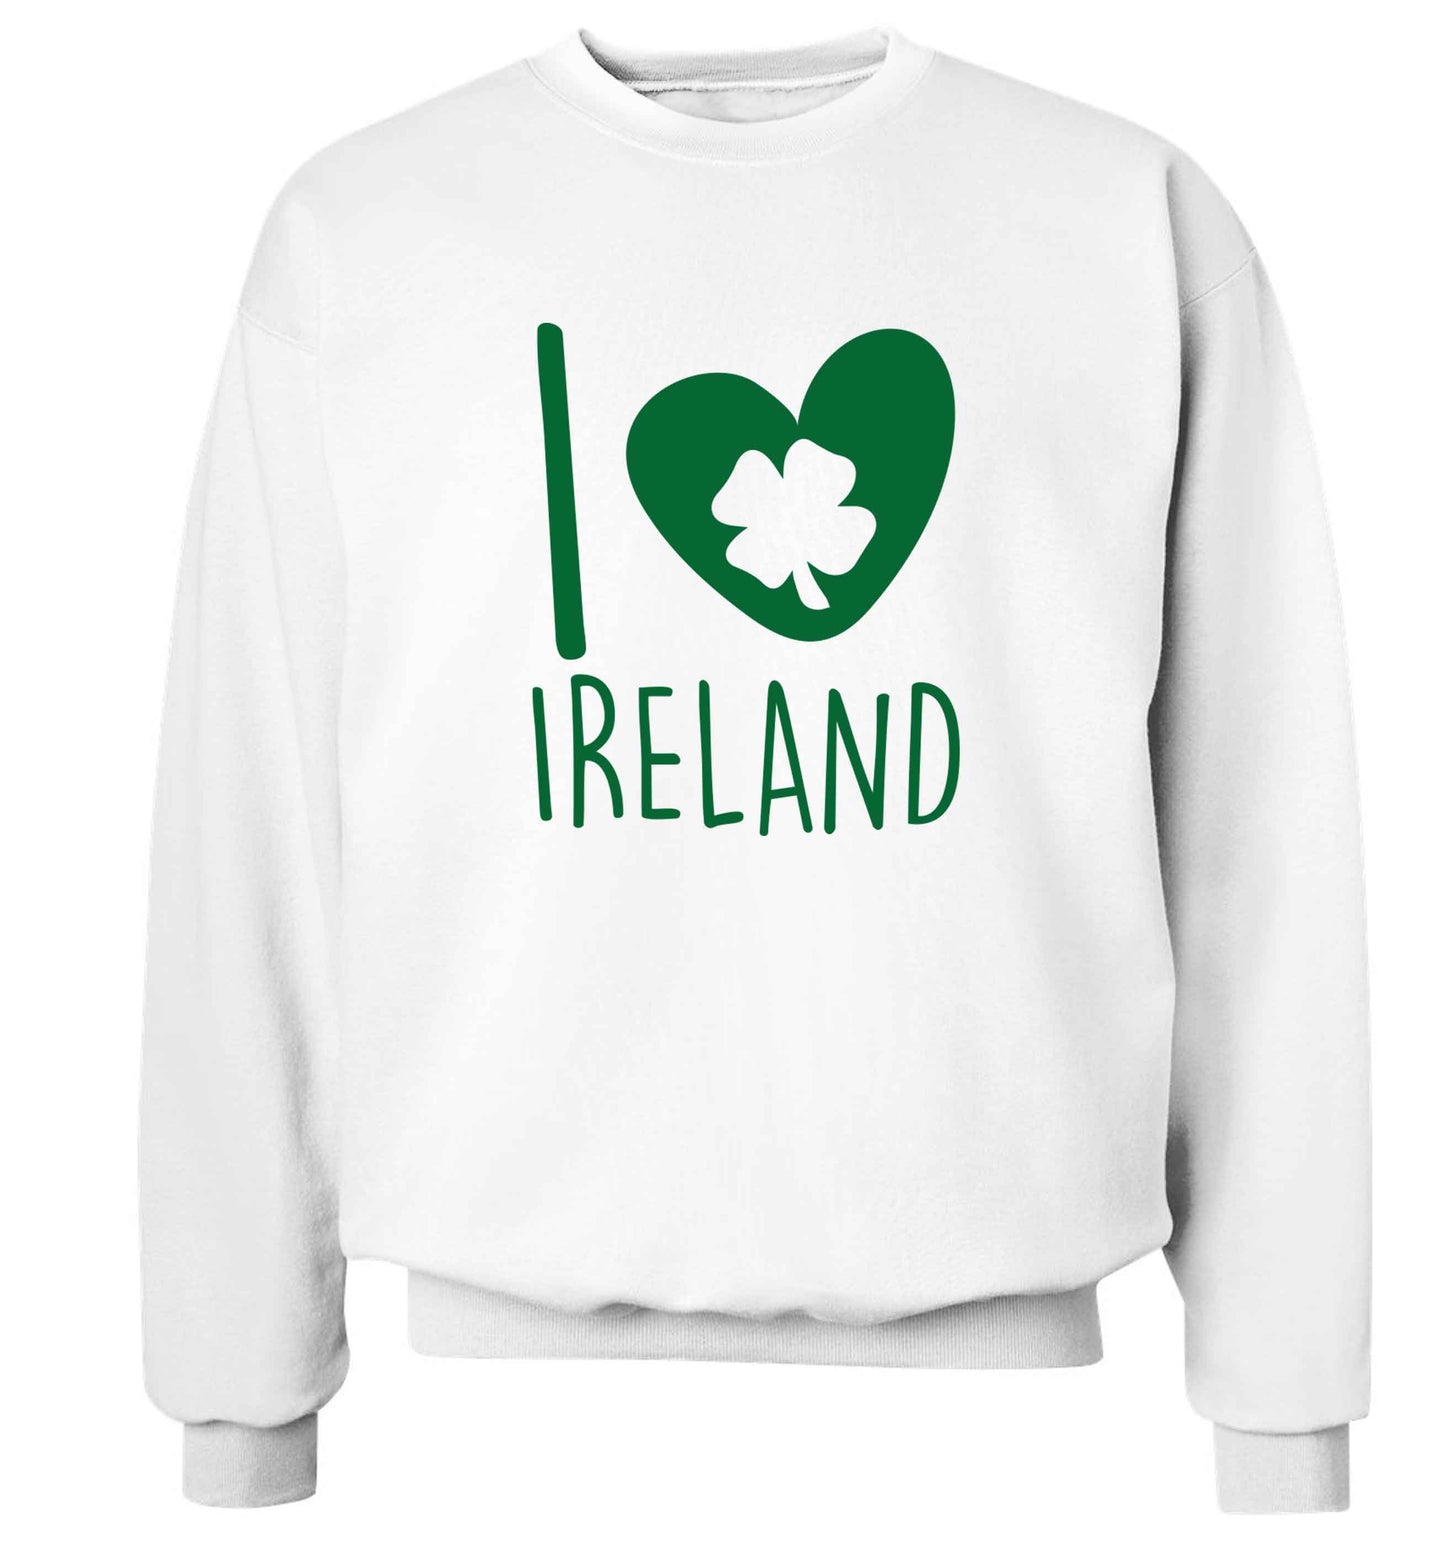 I love Ireland adult's unisex white sweater 2XL